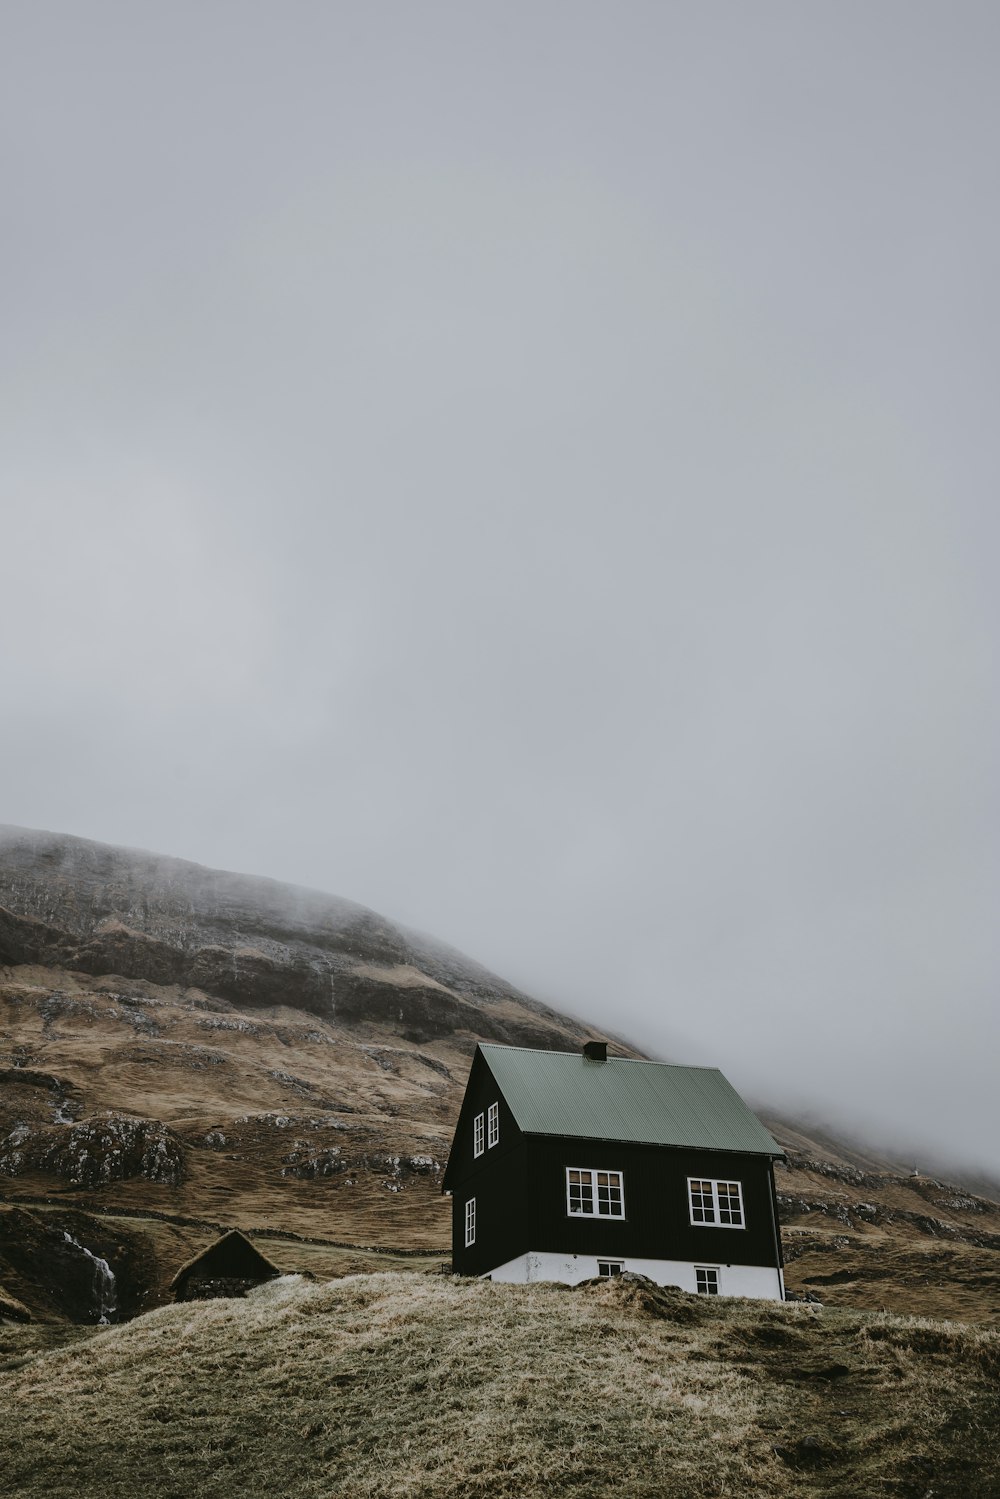 Casa de madera en blanco y negro en la cima de la colina